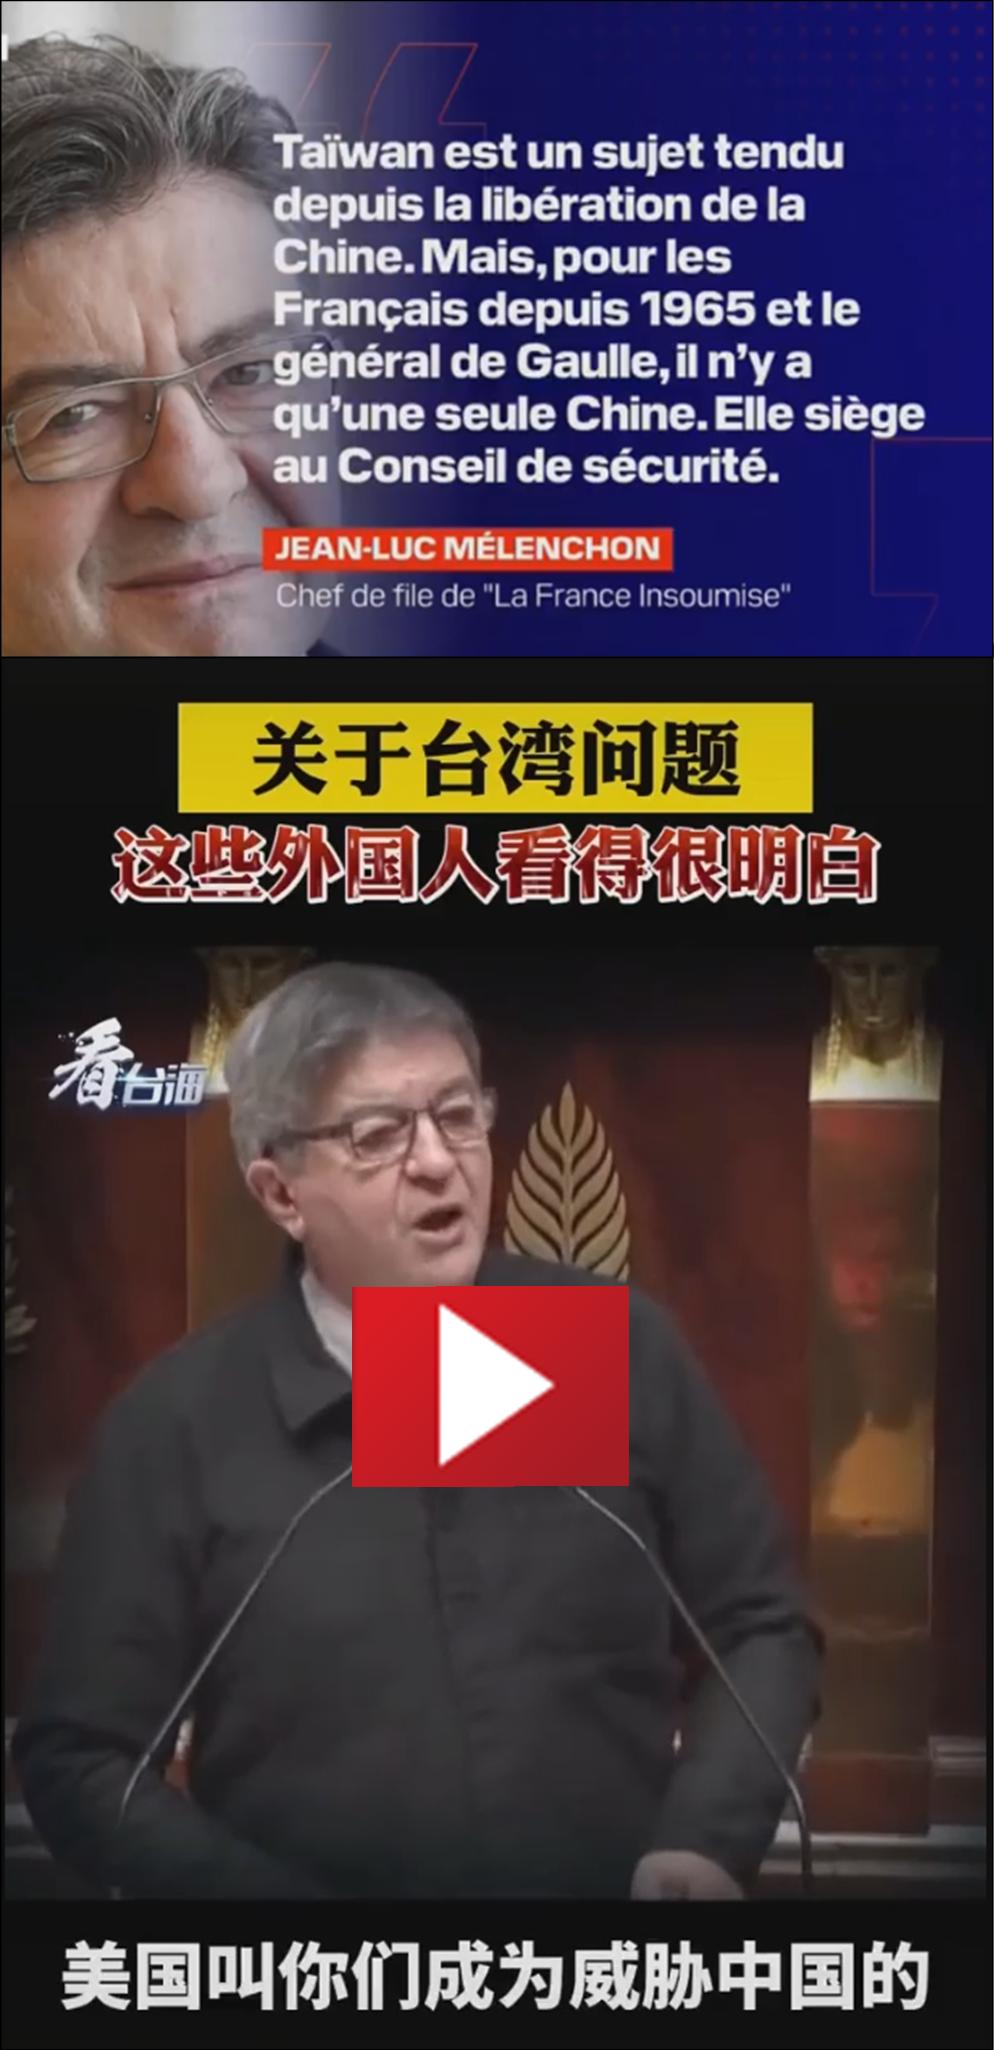 Jean-Luc Mlenchon ne veut pas suivre les tats-Unis d'Amrique dans la guerre froide contre la Chine.